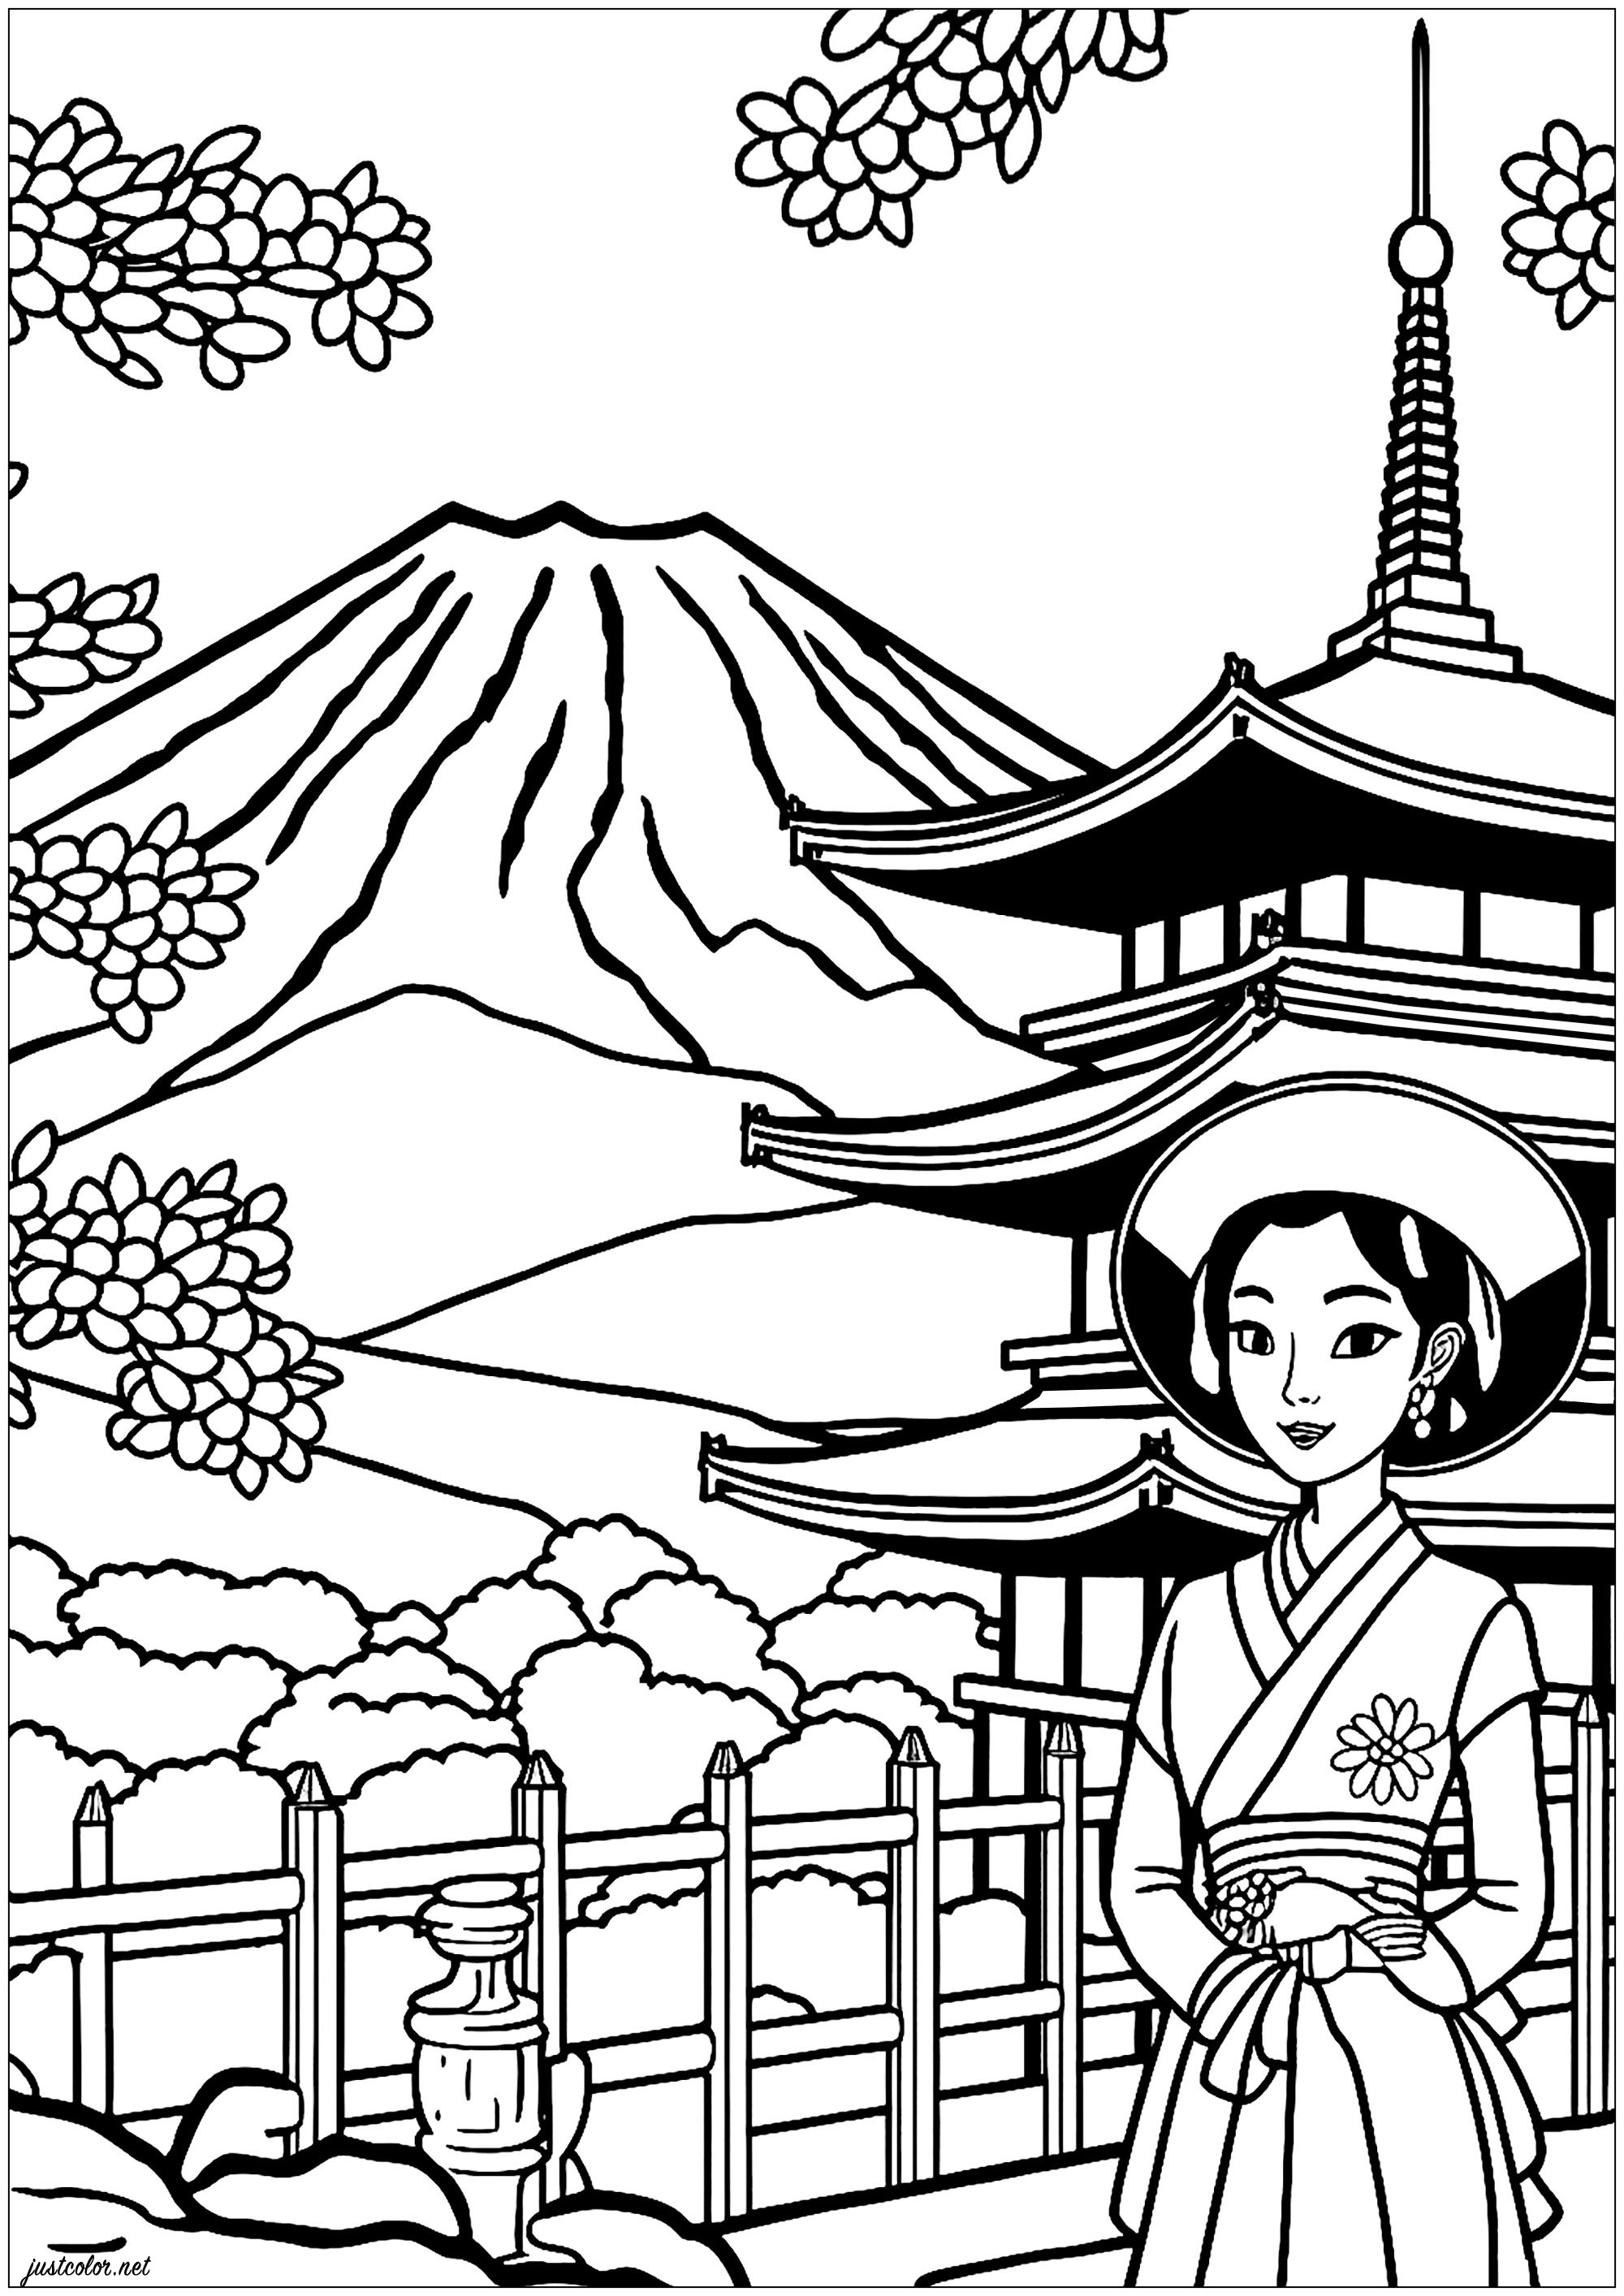 Colorazione di una giovane geisha. Sullo sfondo, un profondo relax colorando un bellissimo tempio giapponese e il Monte Fuji.